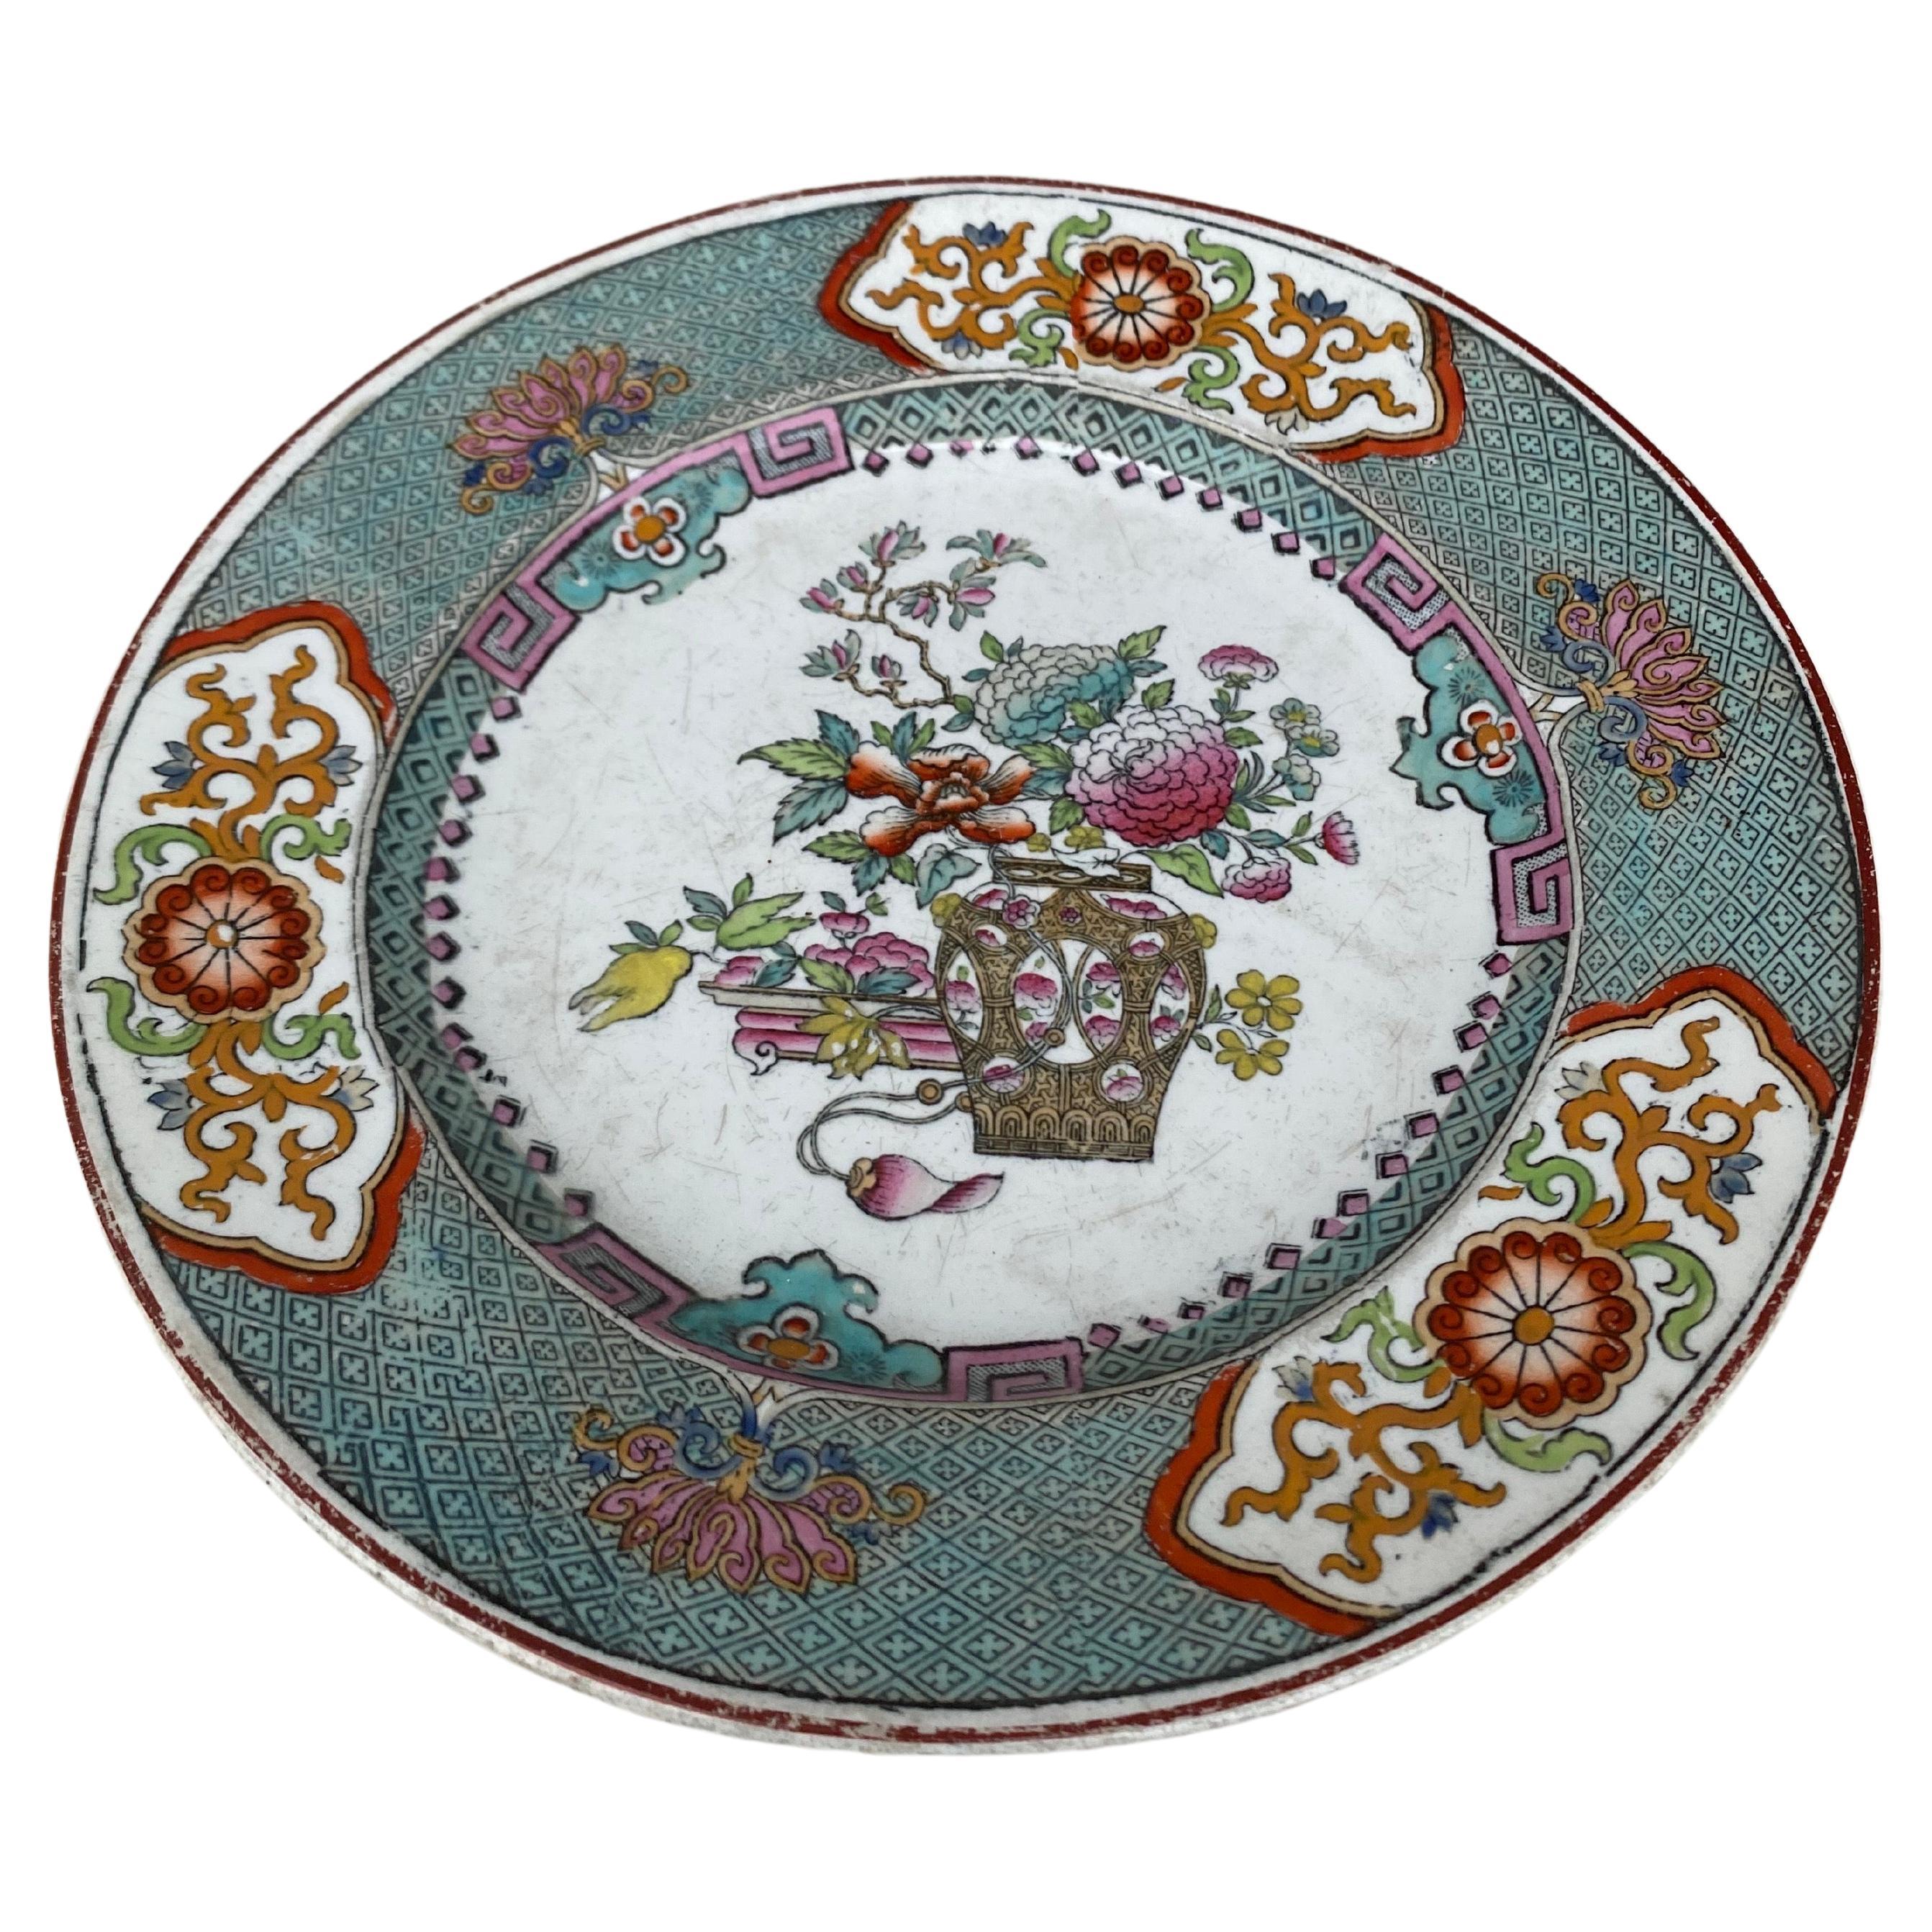 Assiette de Chinoiserie anglaise du 19ème siècle signée Copeland.